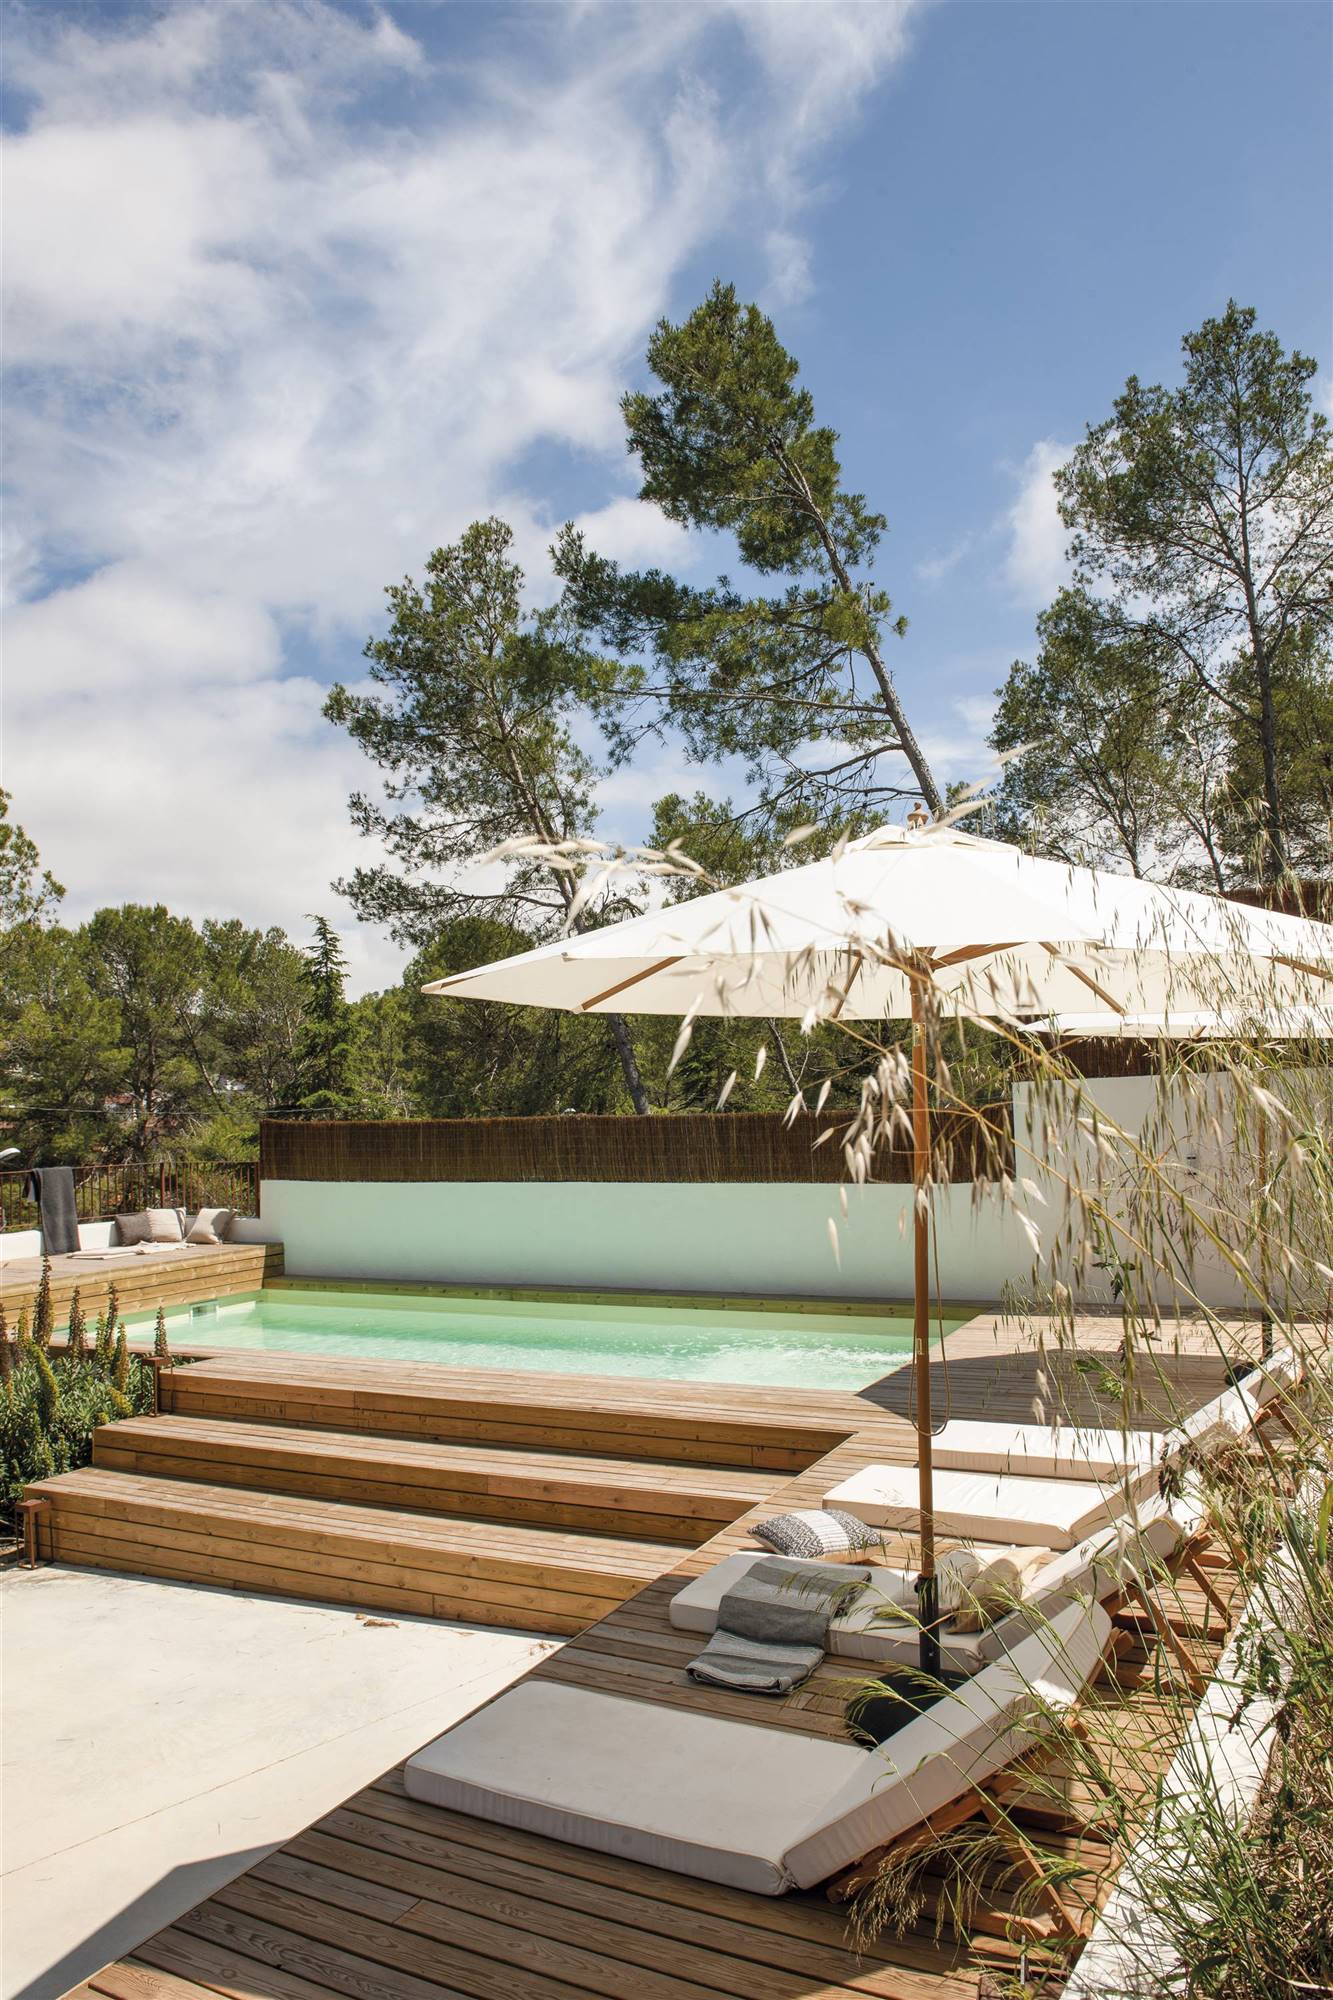 Una piscina elevada con acabado en madera y tumbonas alrededor